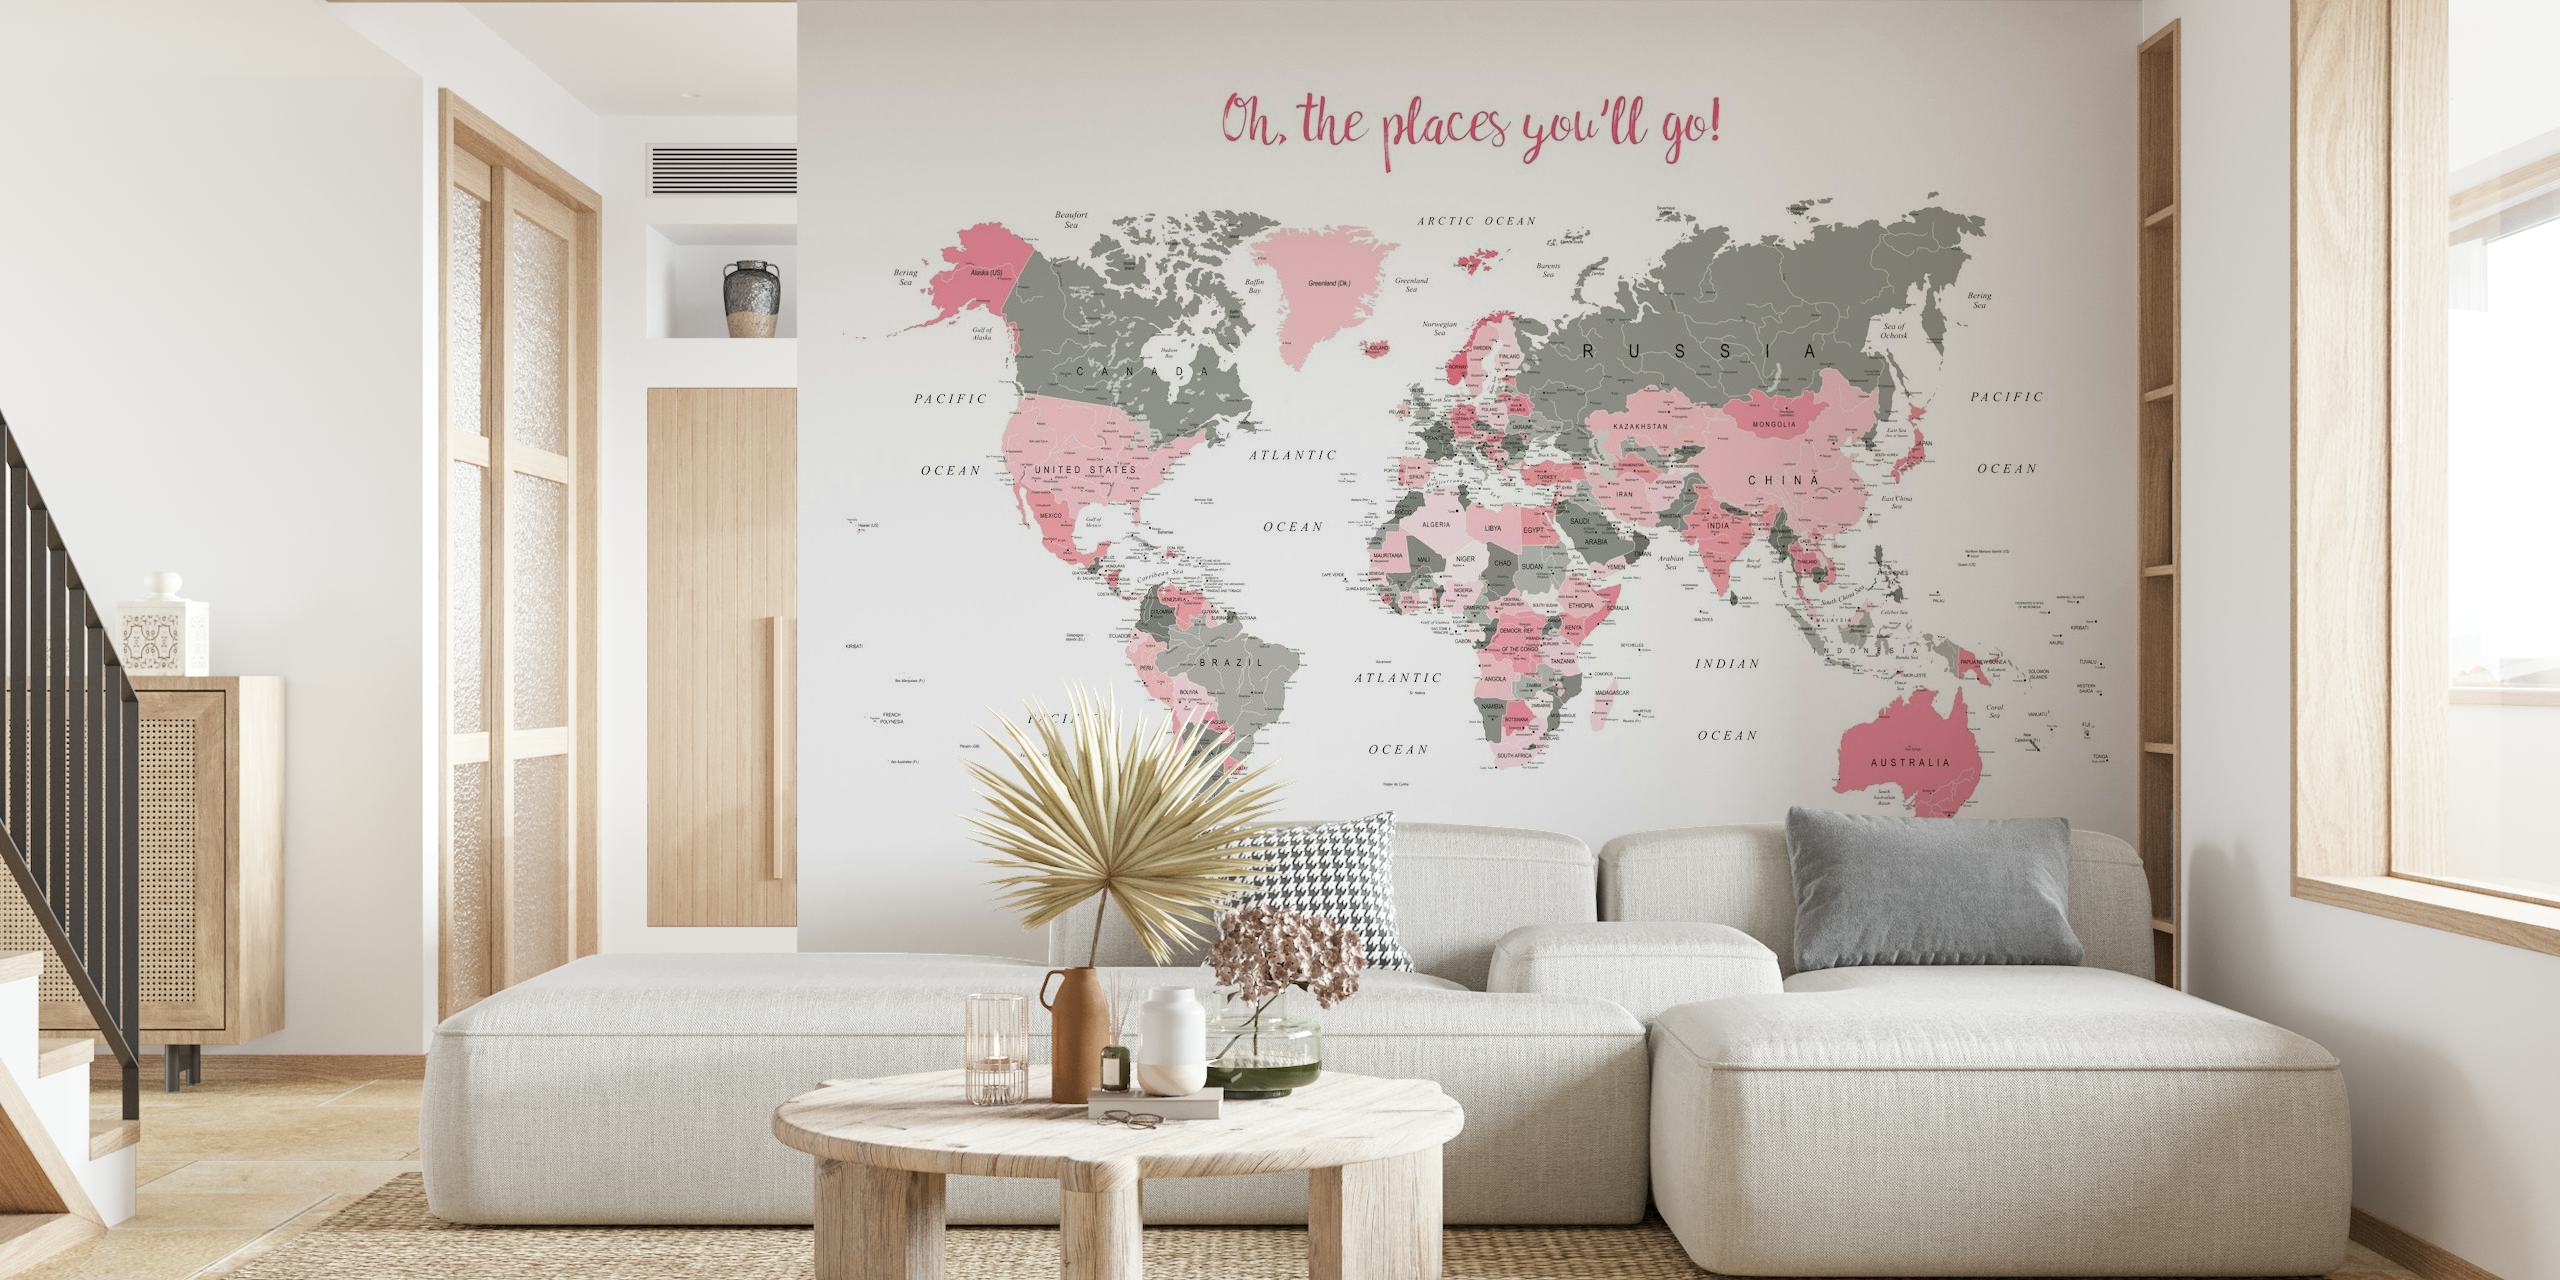 Stylowa fototapeta z mapą świata z różowymi akcentami i napisem „Och, te miejsca, które odwiedzisz!” do wystroju domu.